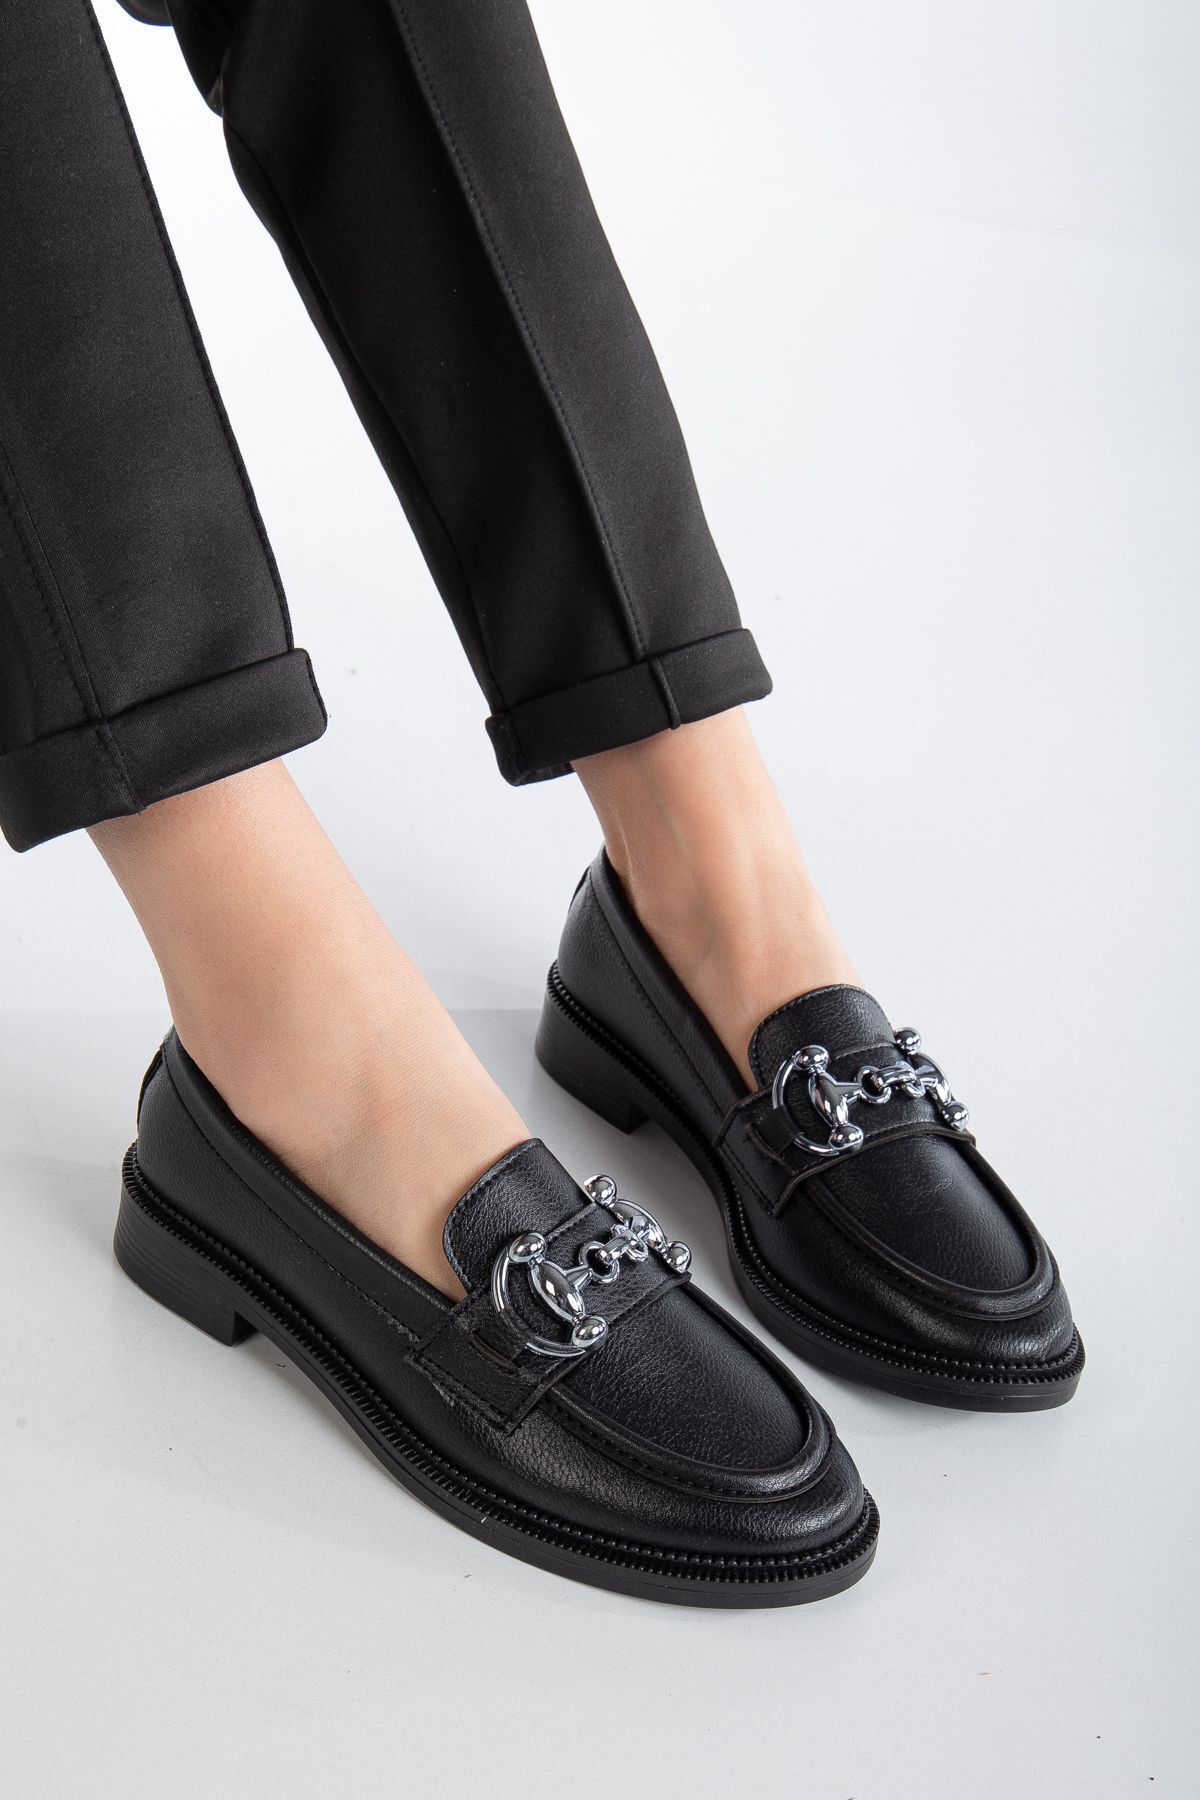 Bera Kadın Günlük Loafer Ayakkabı